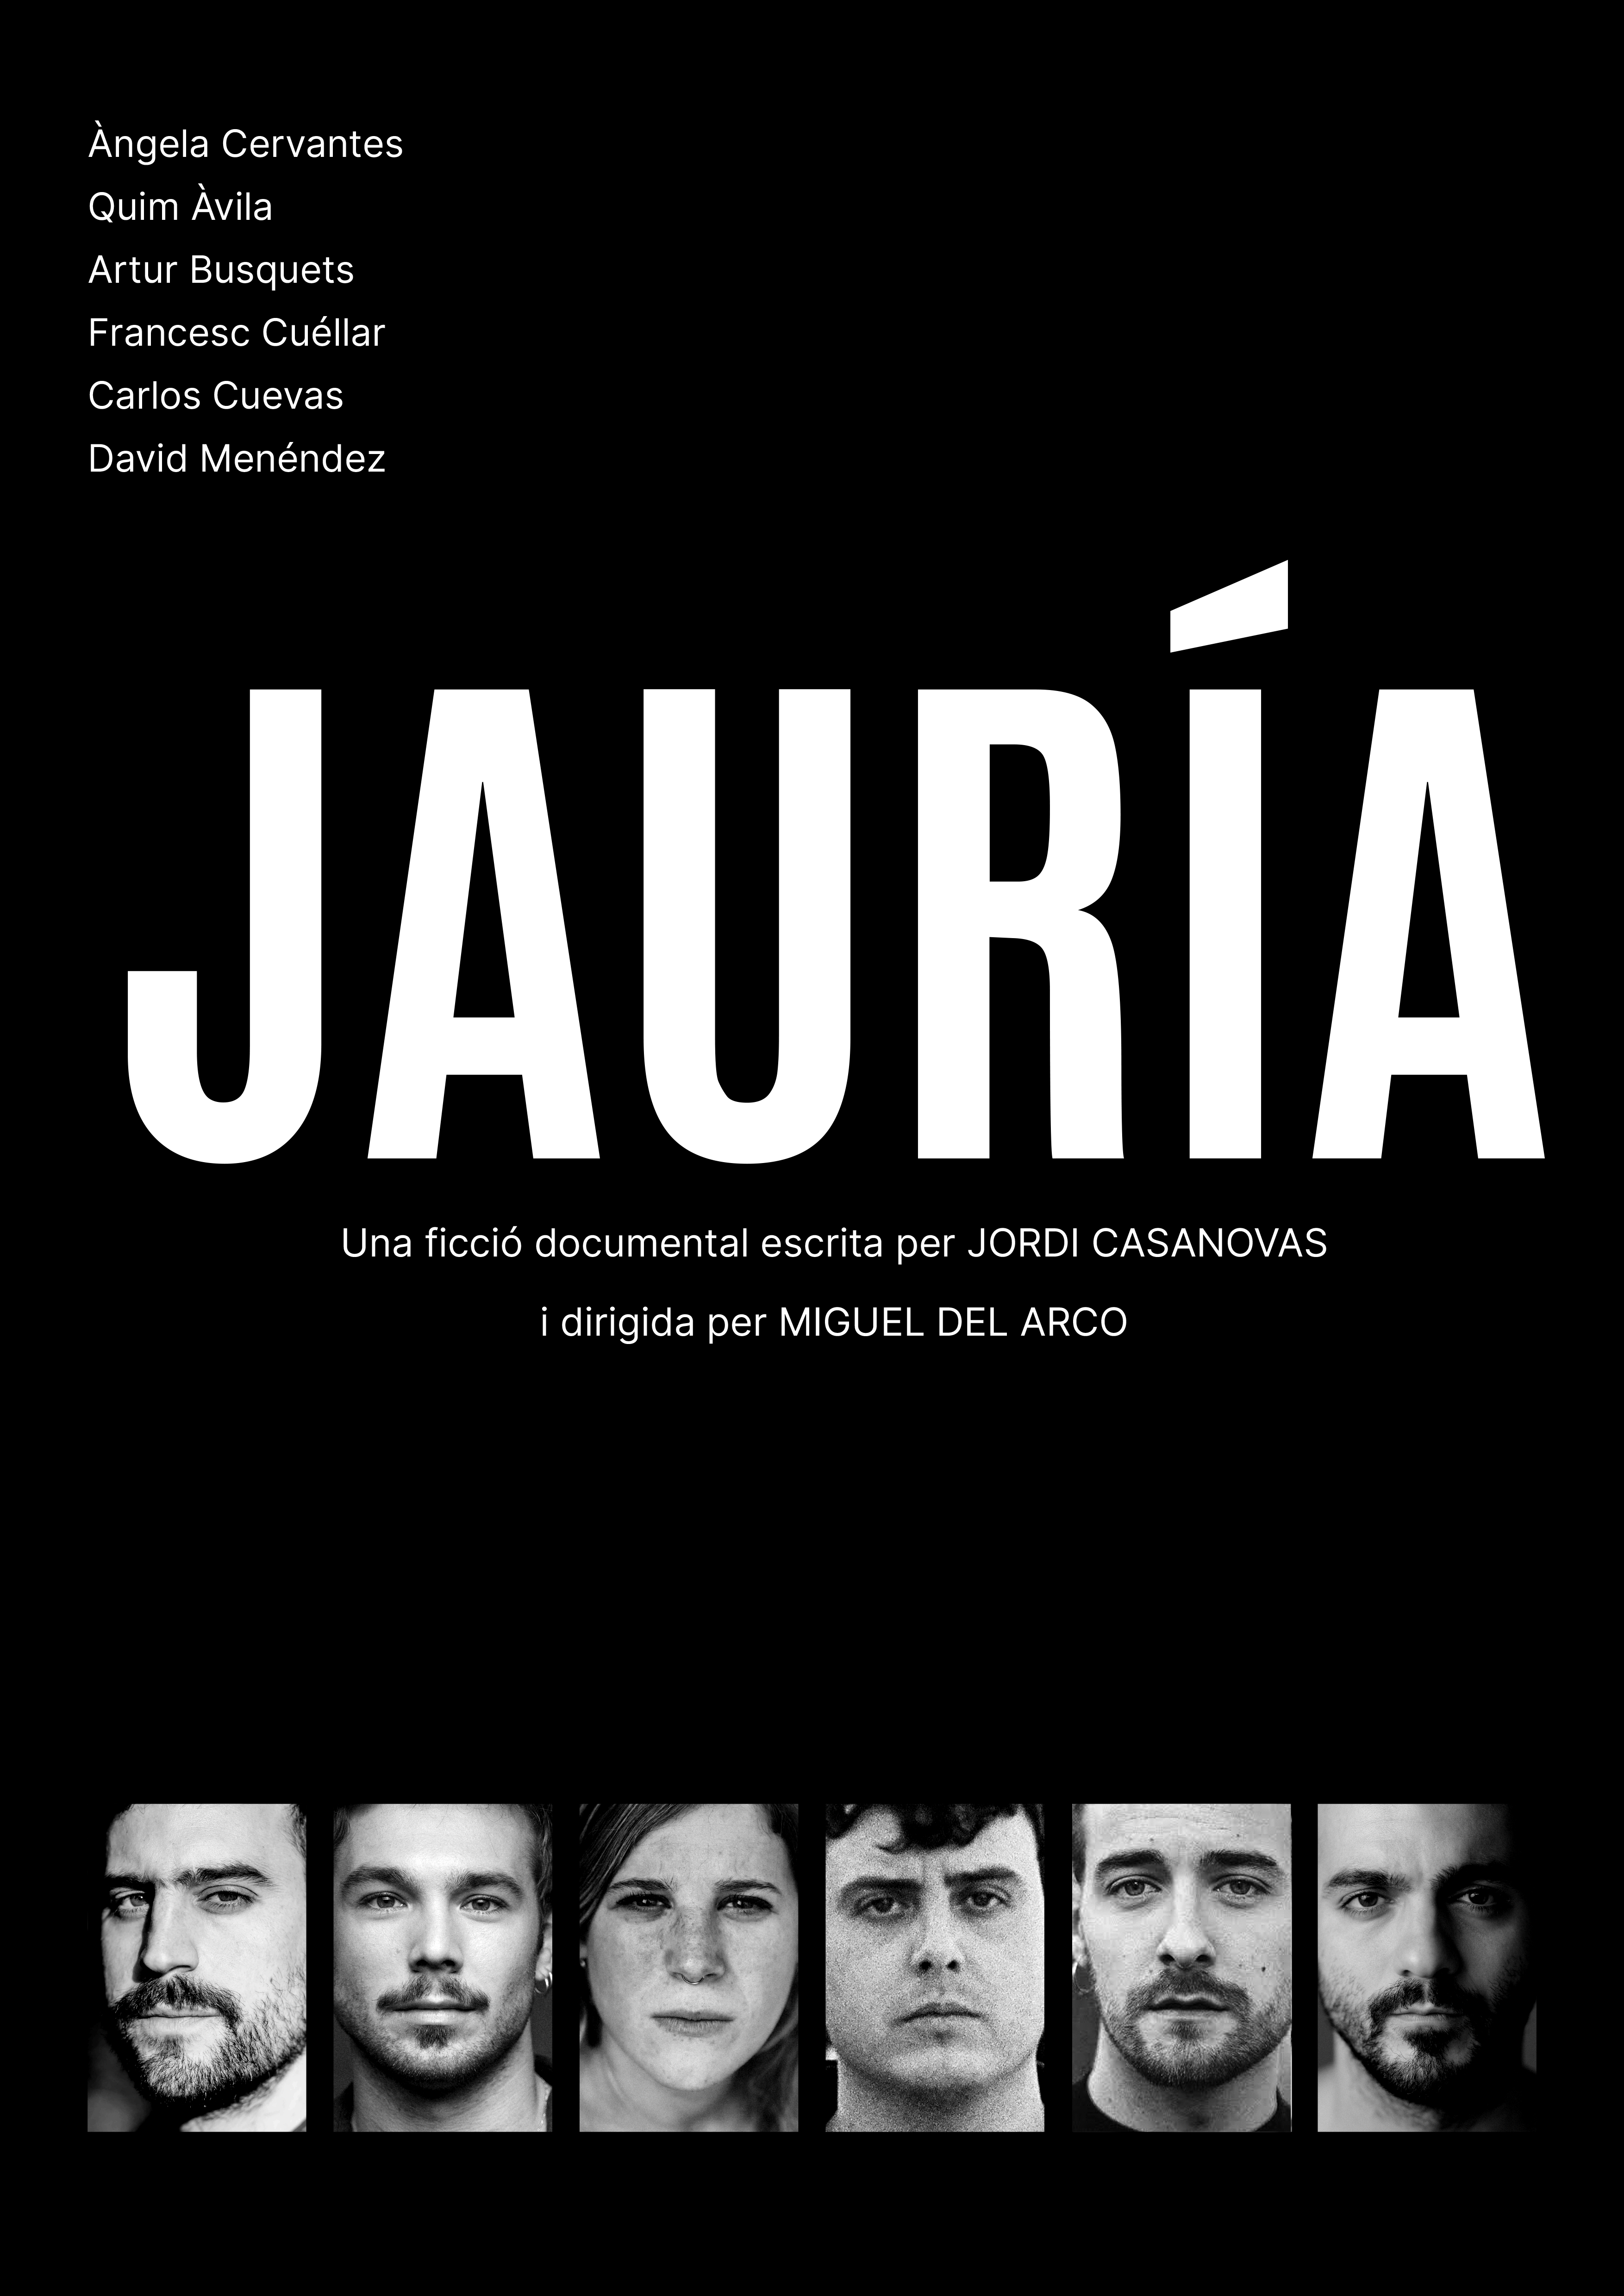 Imatge descriptiva de l'espectacle Jauría